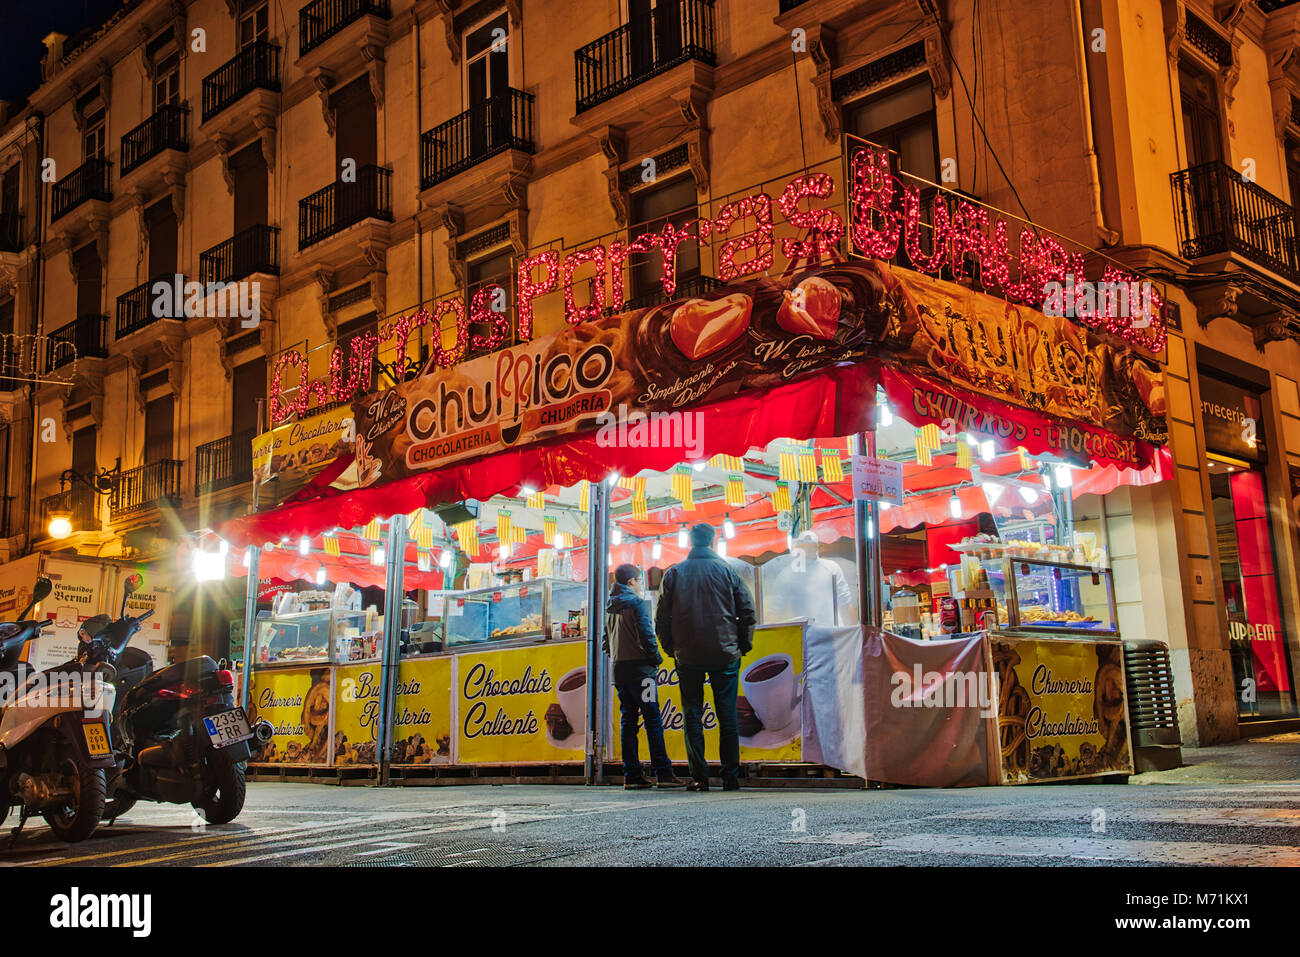 VALENCIA, Spanien - 3/7/2018: In der Nacht auf den Straßen der Stadt von Valencia, Spanien eines der vielen Churros con chocolate steht, während die Cel Stockfoto